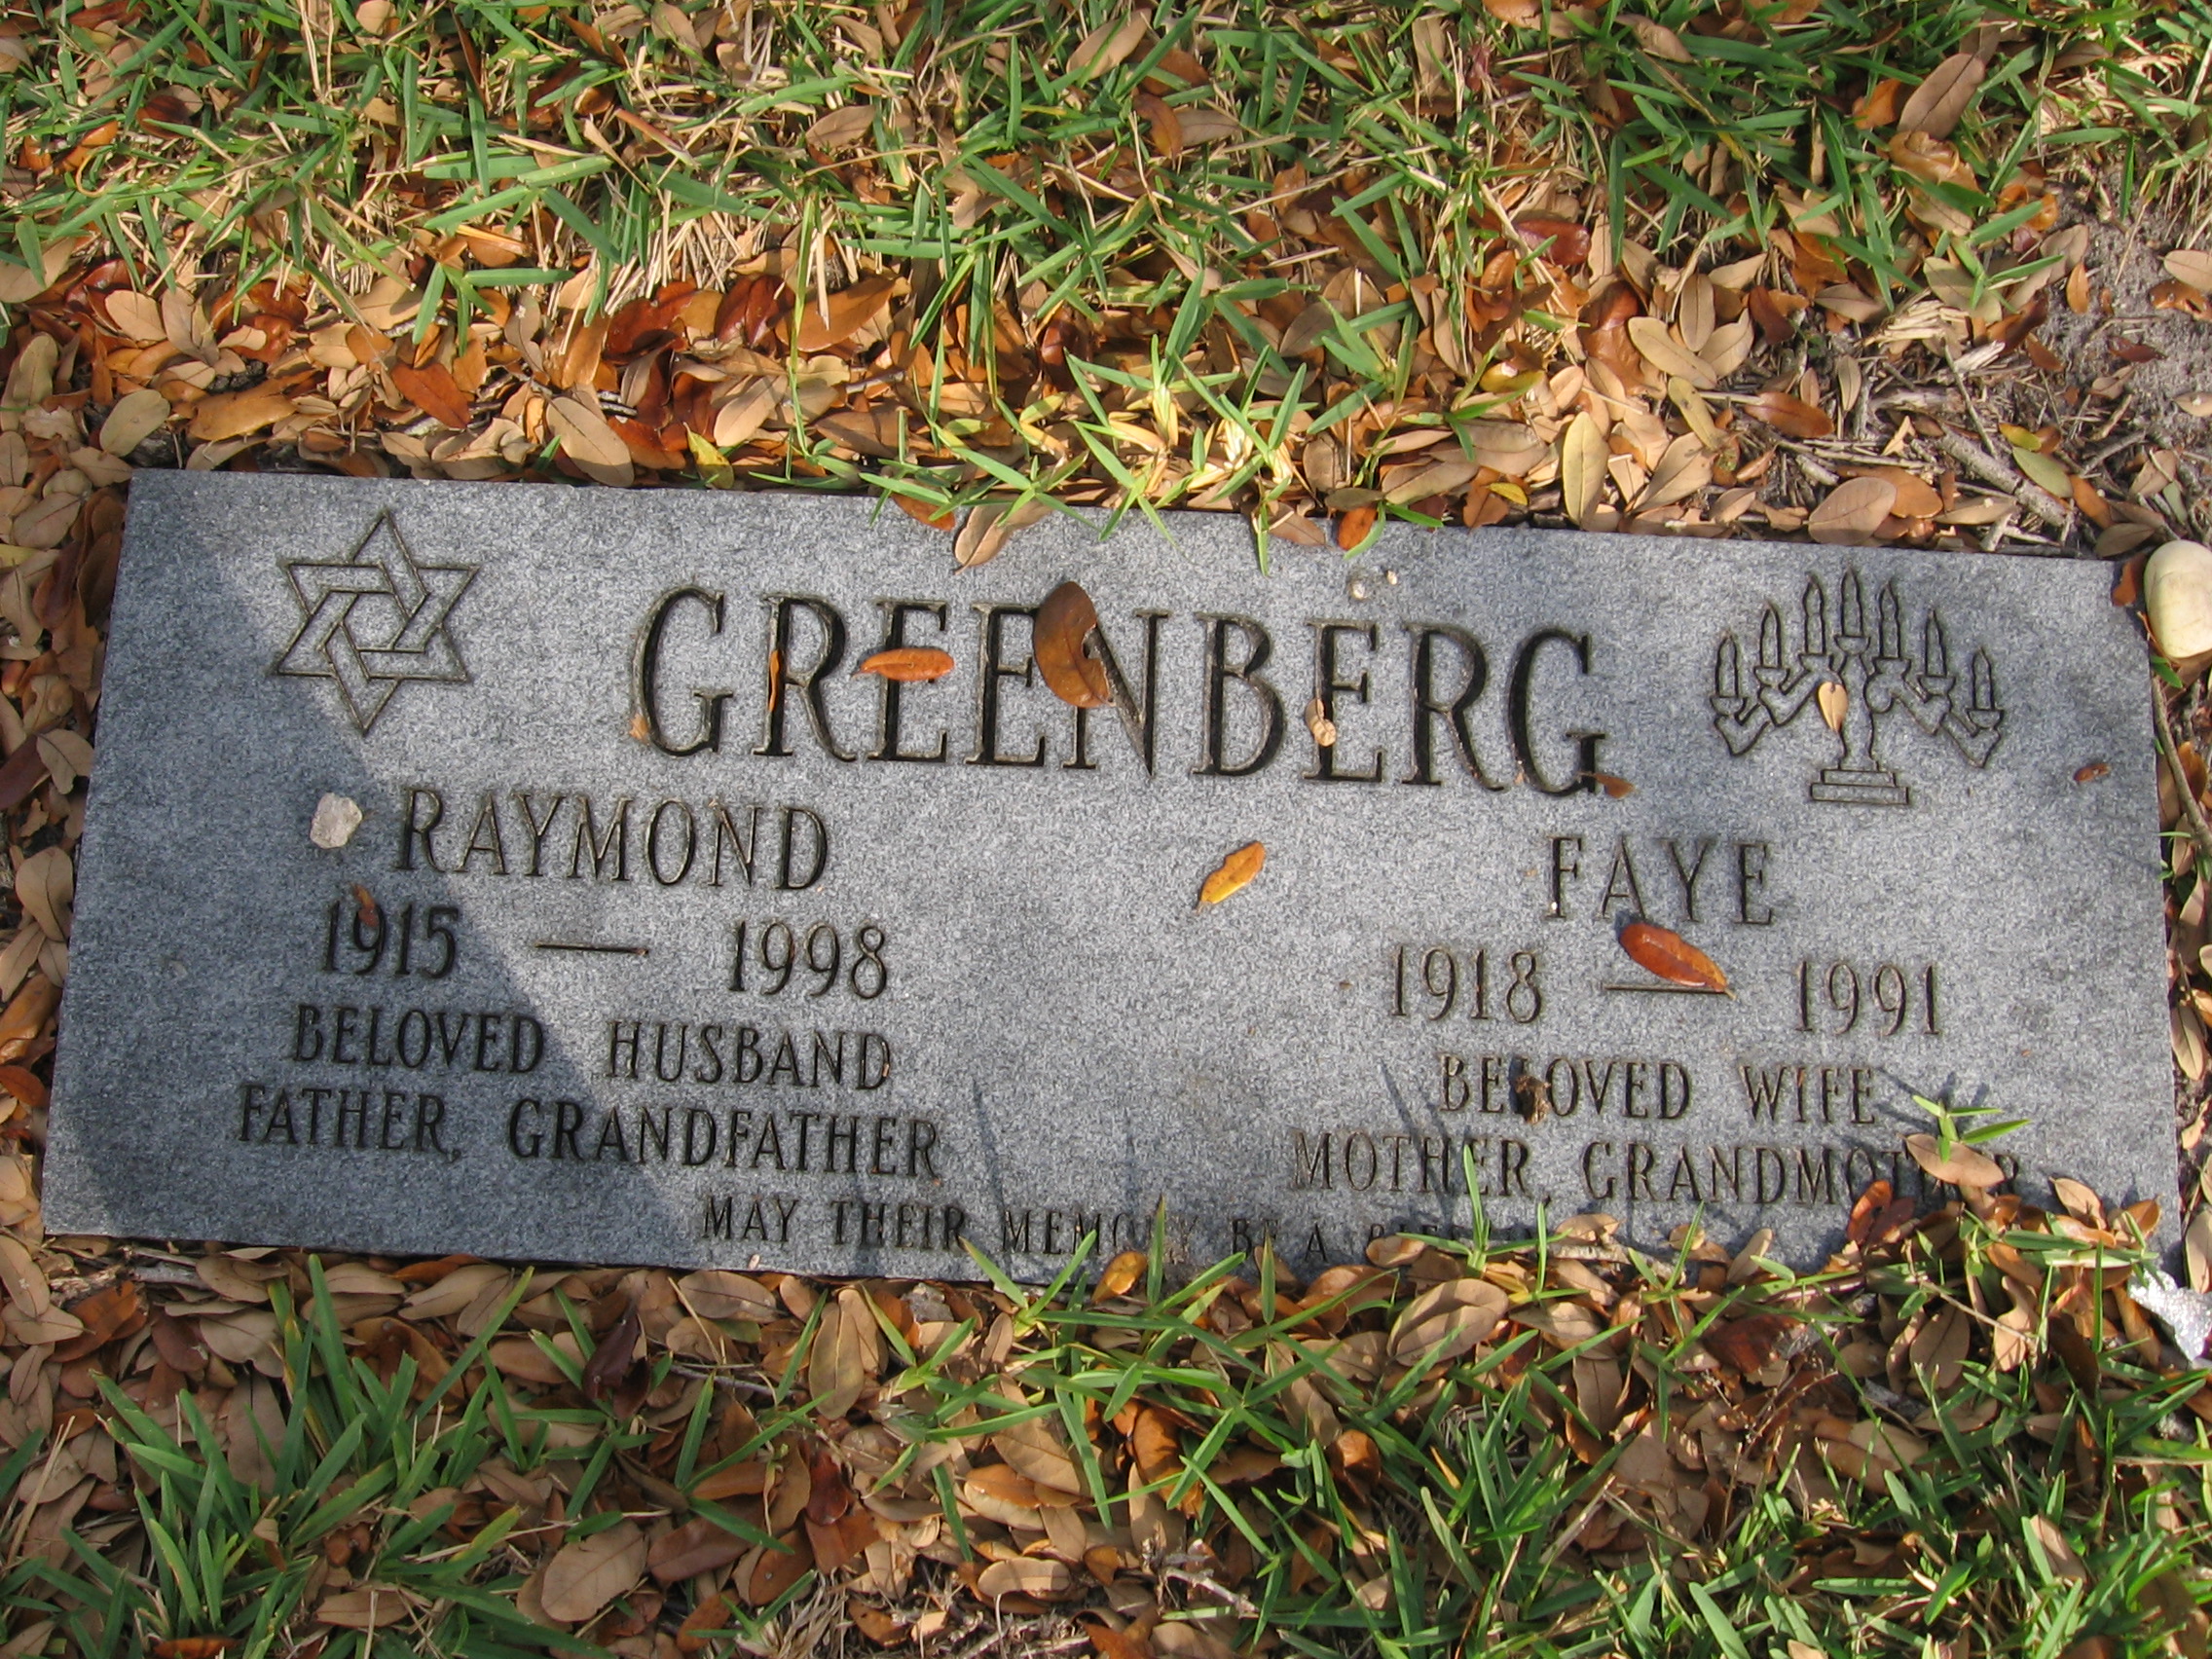 Faye Greenberg